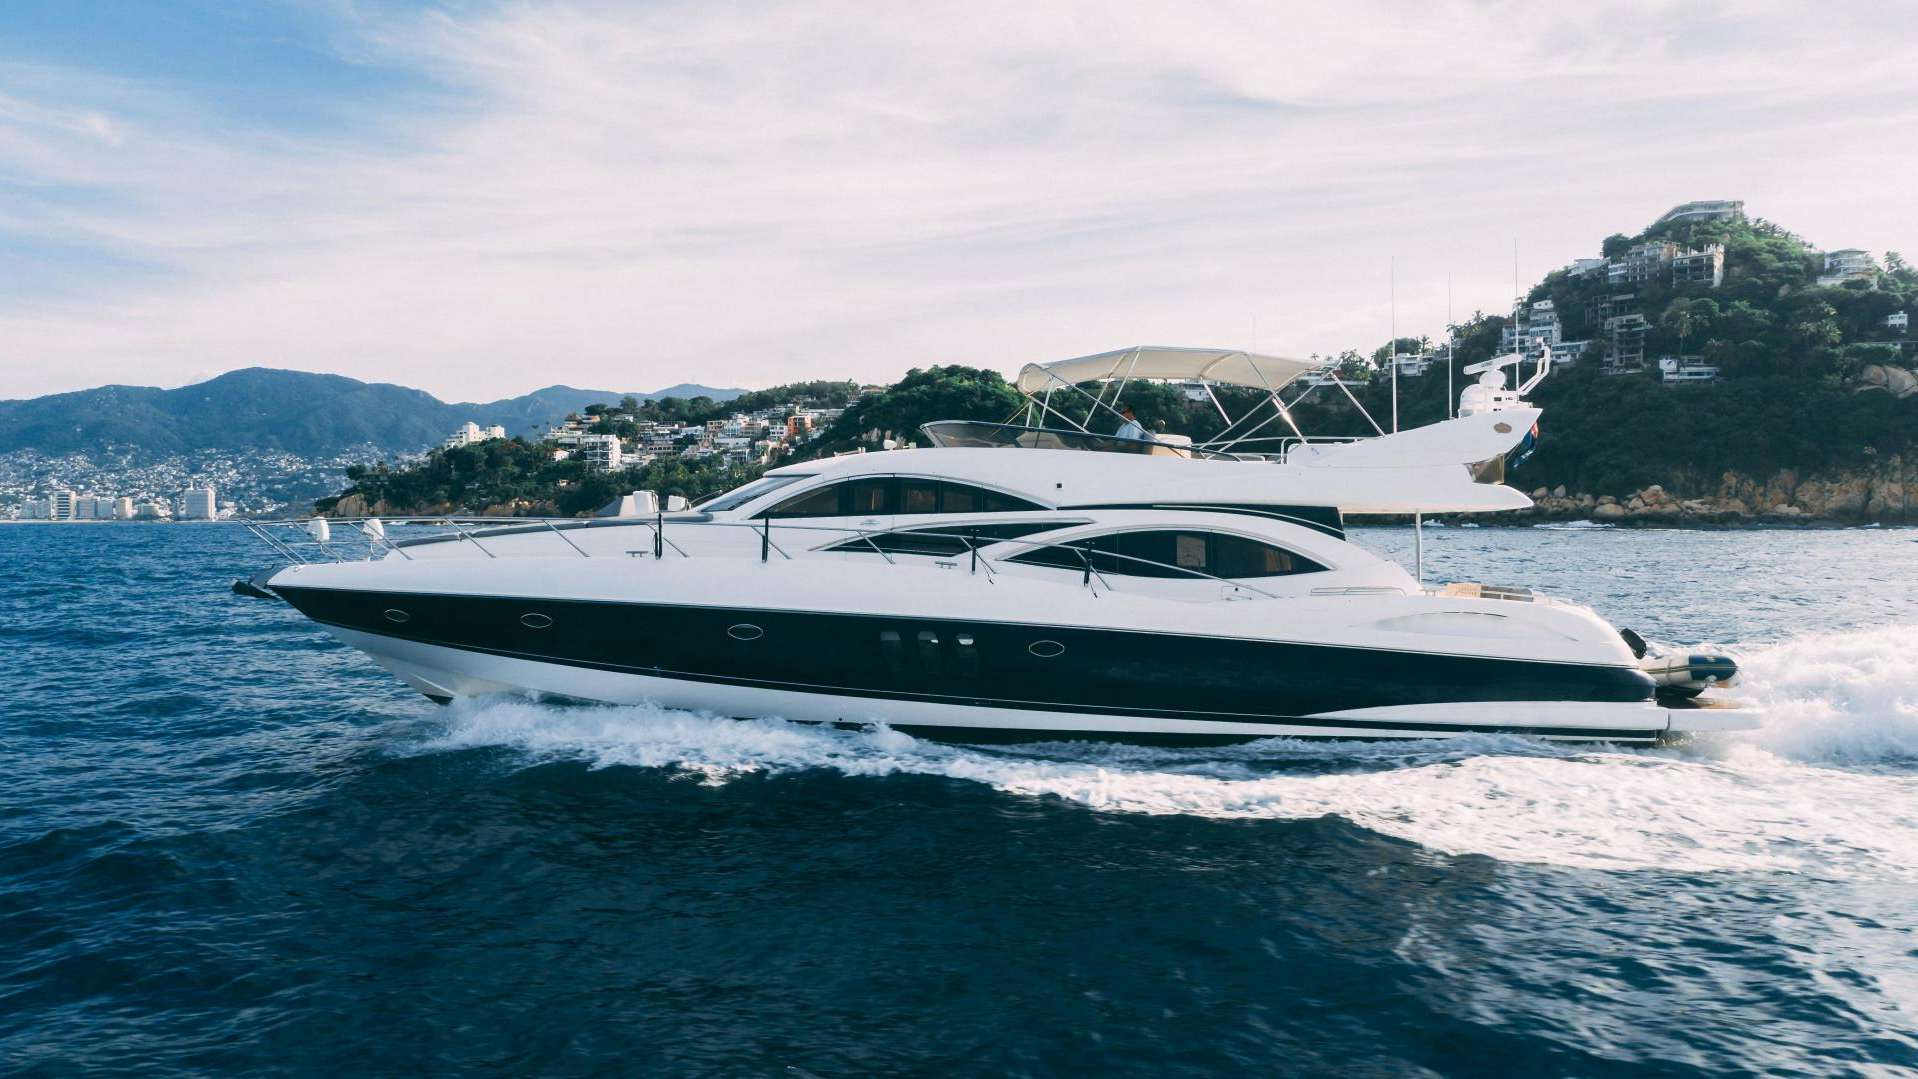 Watch Video for LA BELVA Yacht for Sale